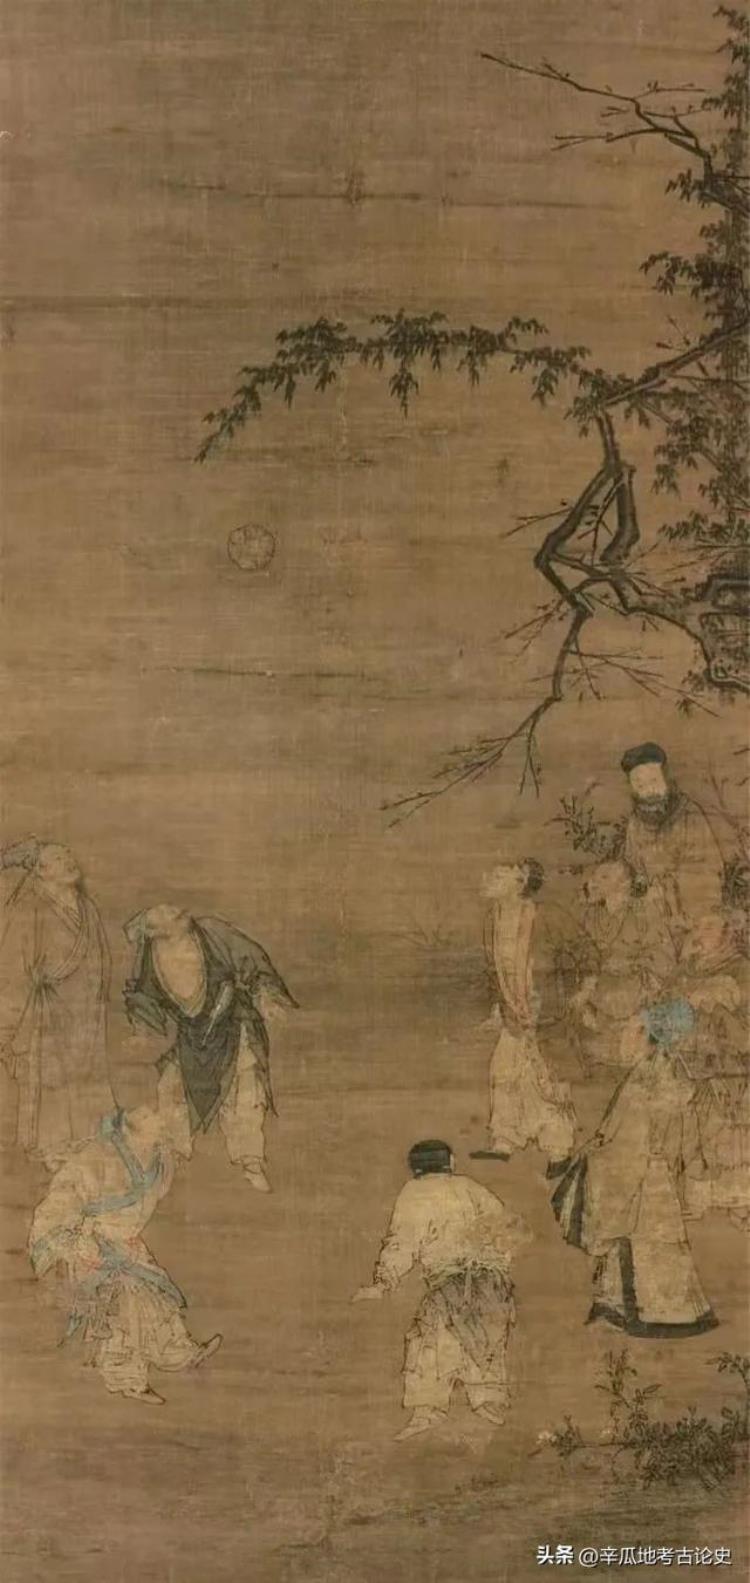 毕晰典籍里的中国古代足球